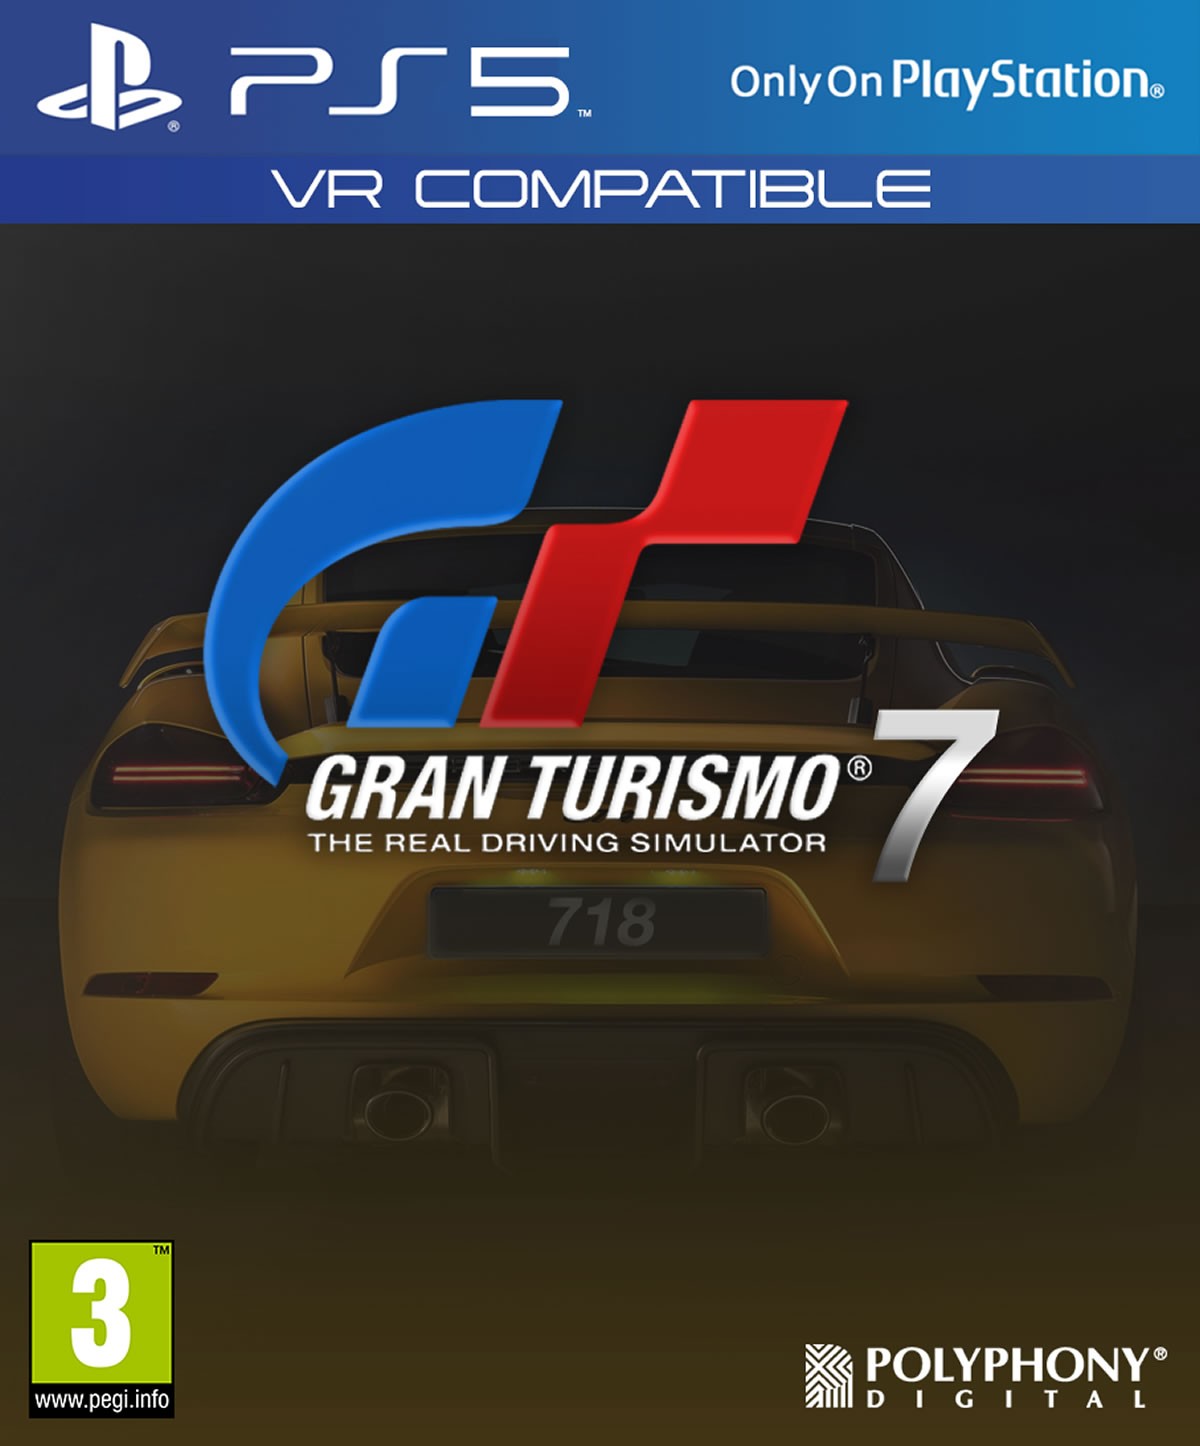 Gran Turismo 7 sera probablement un des titres phares disponibles